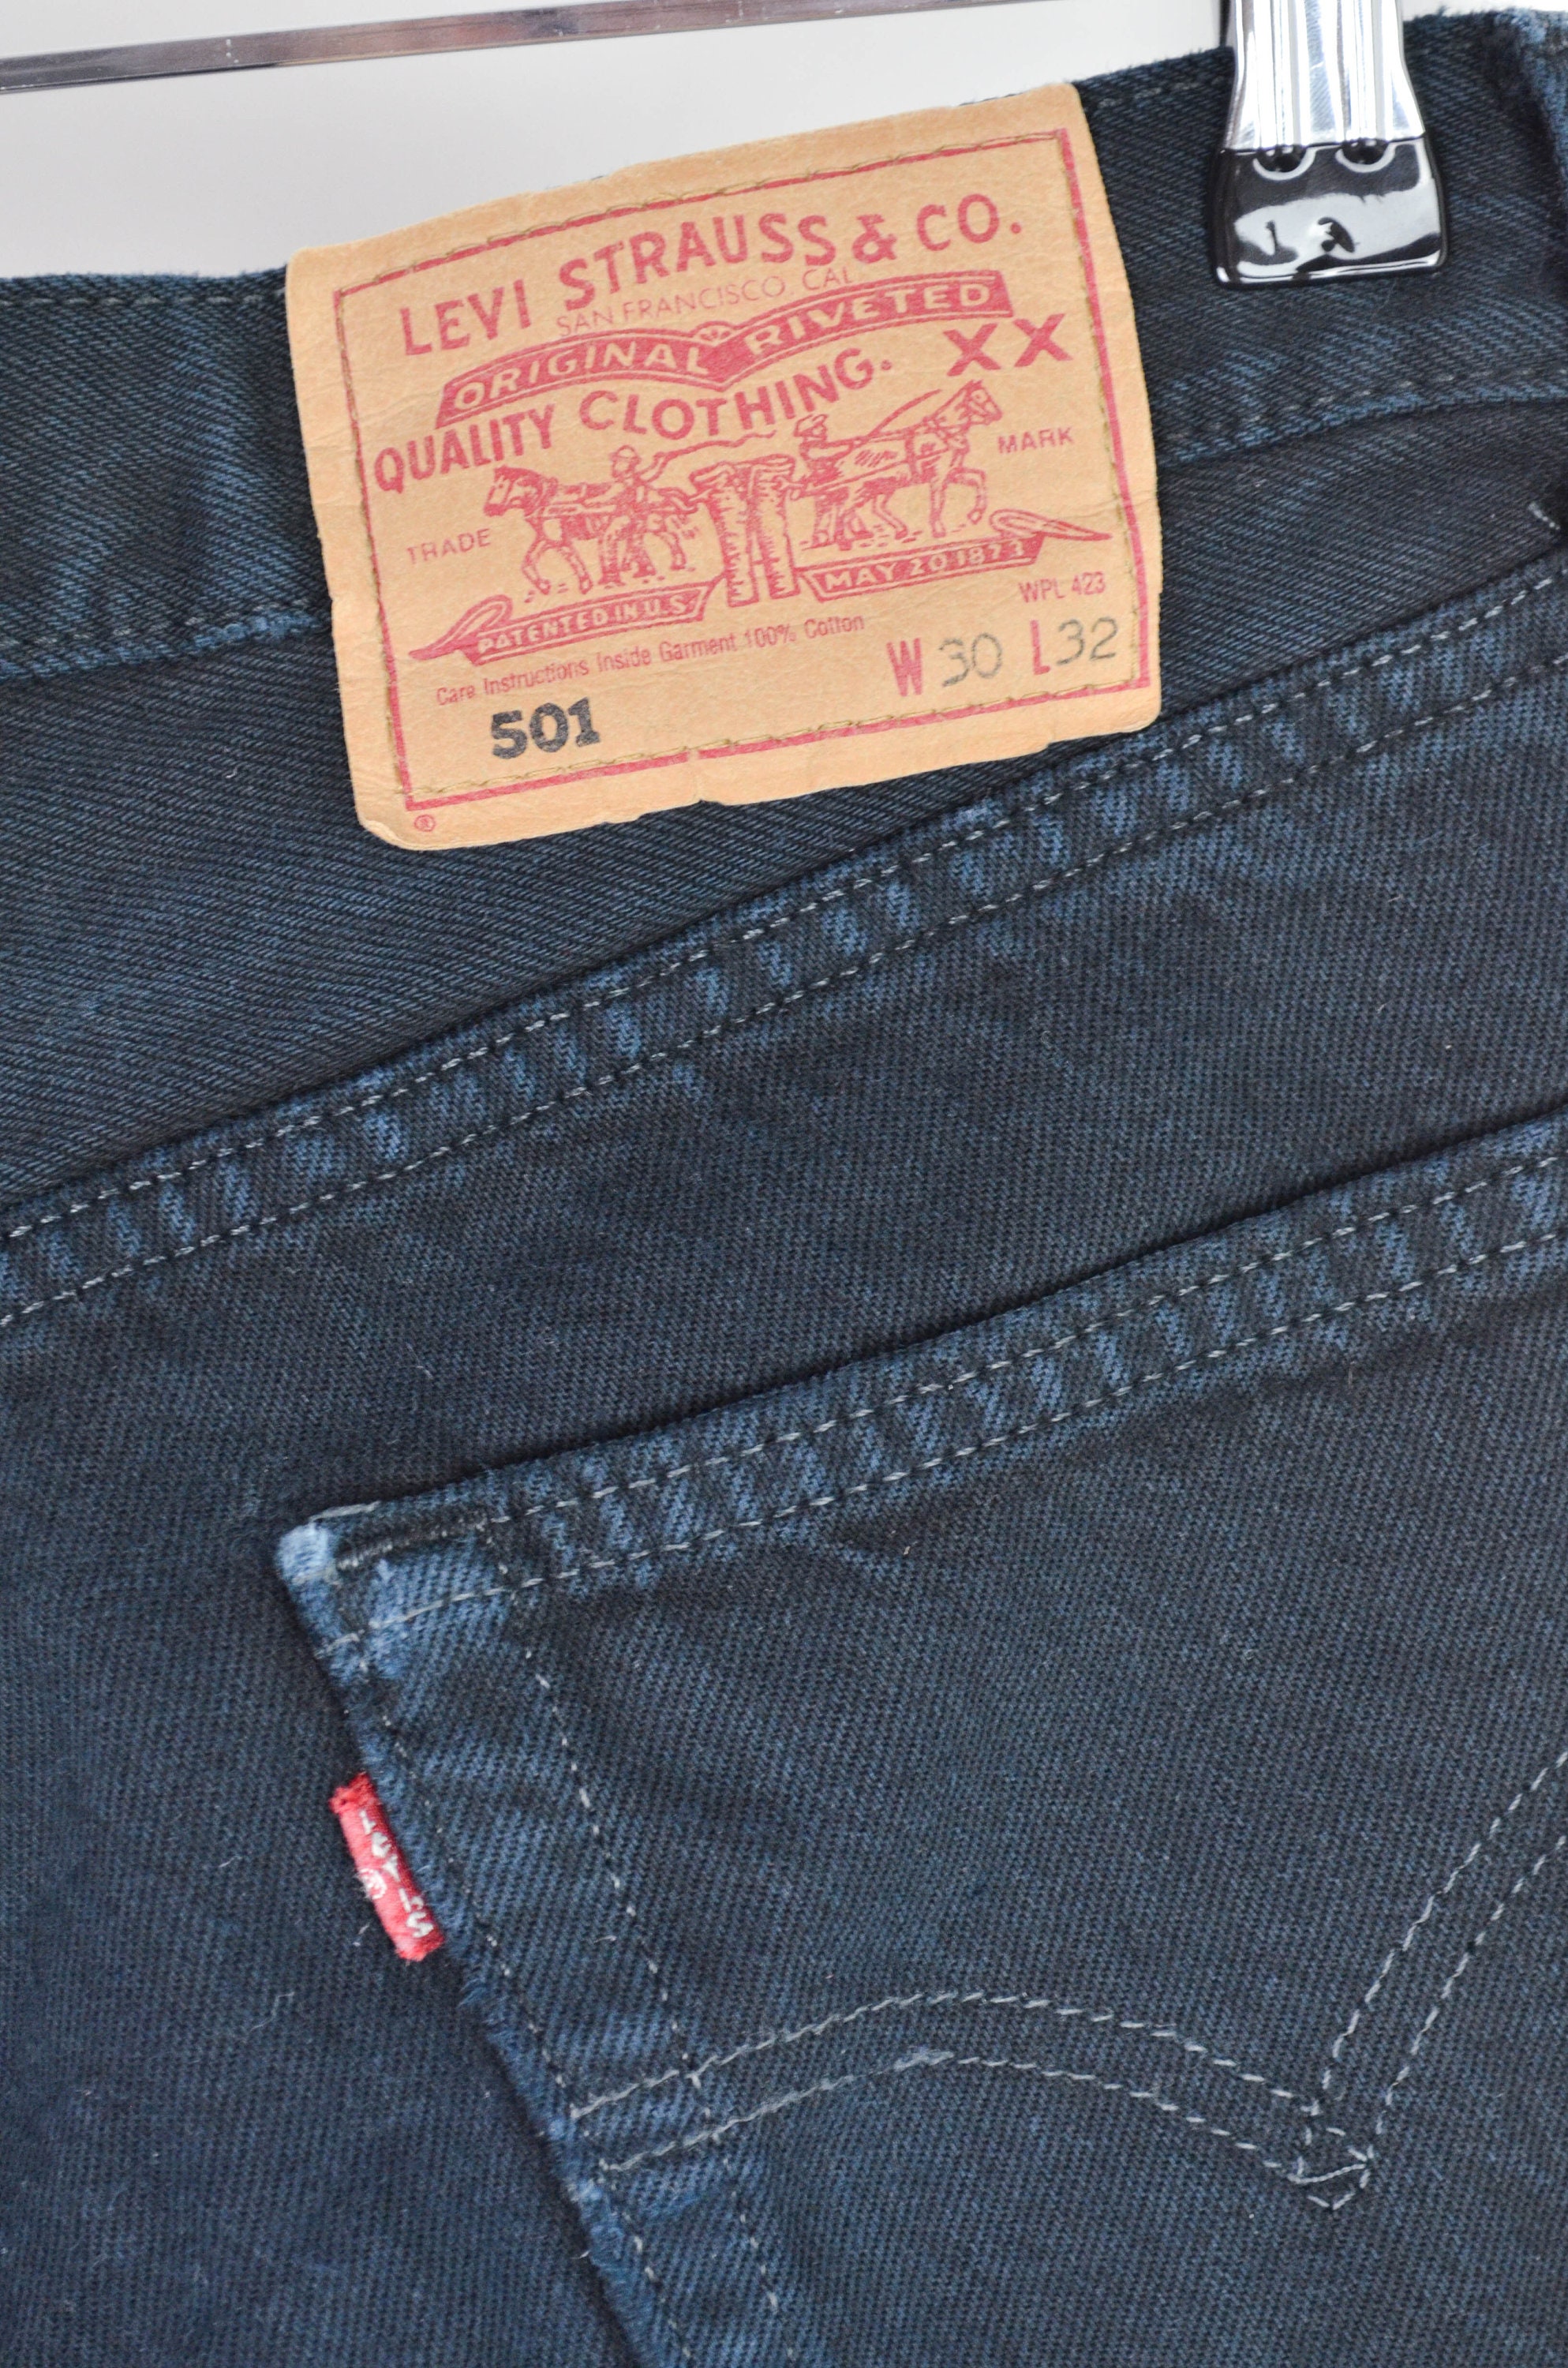 Men's Levis 501 Vintage 90s 00s Retro Black Denim Jeans | Etsy